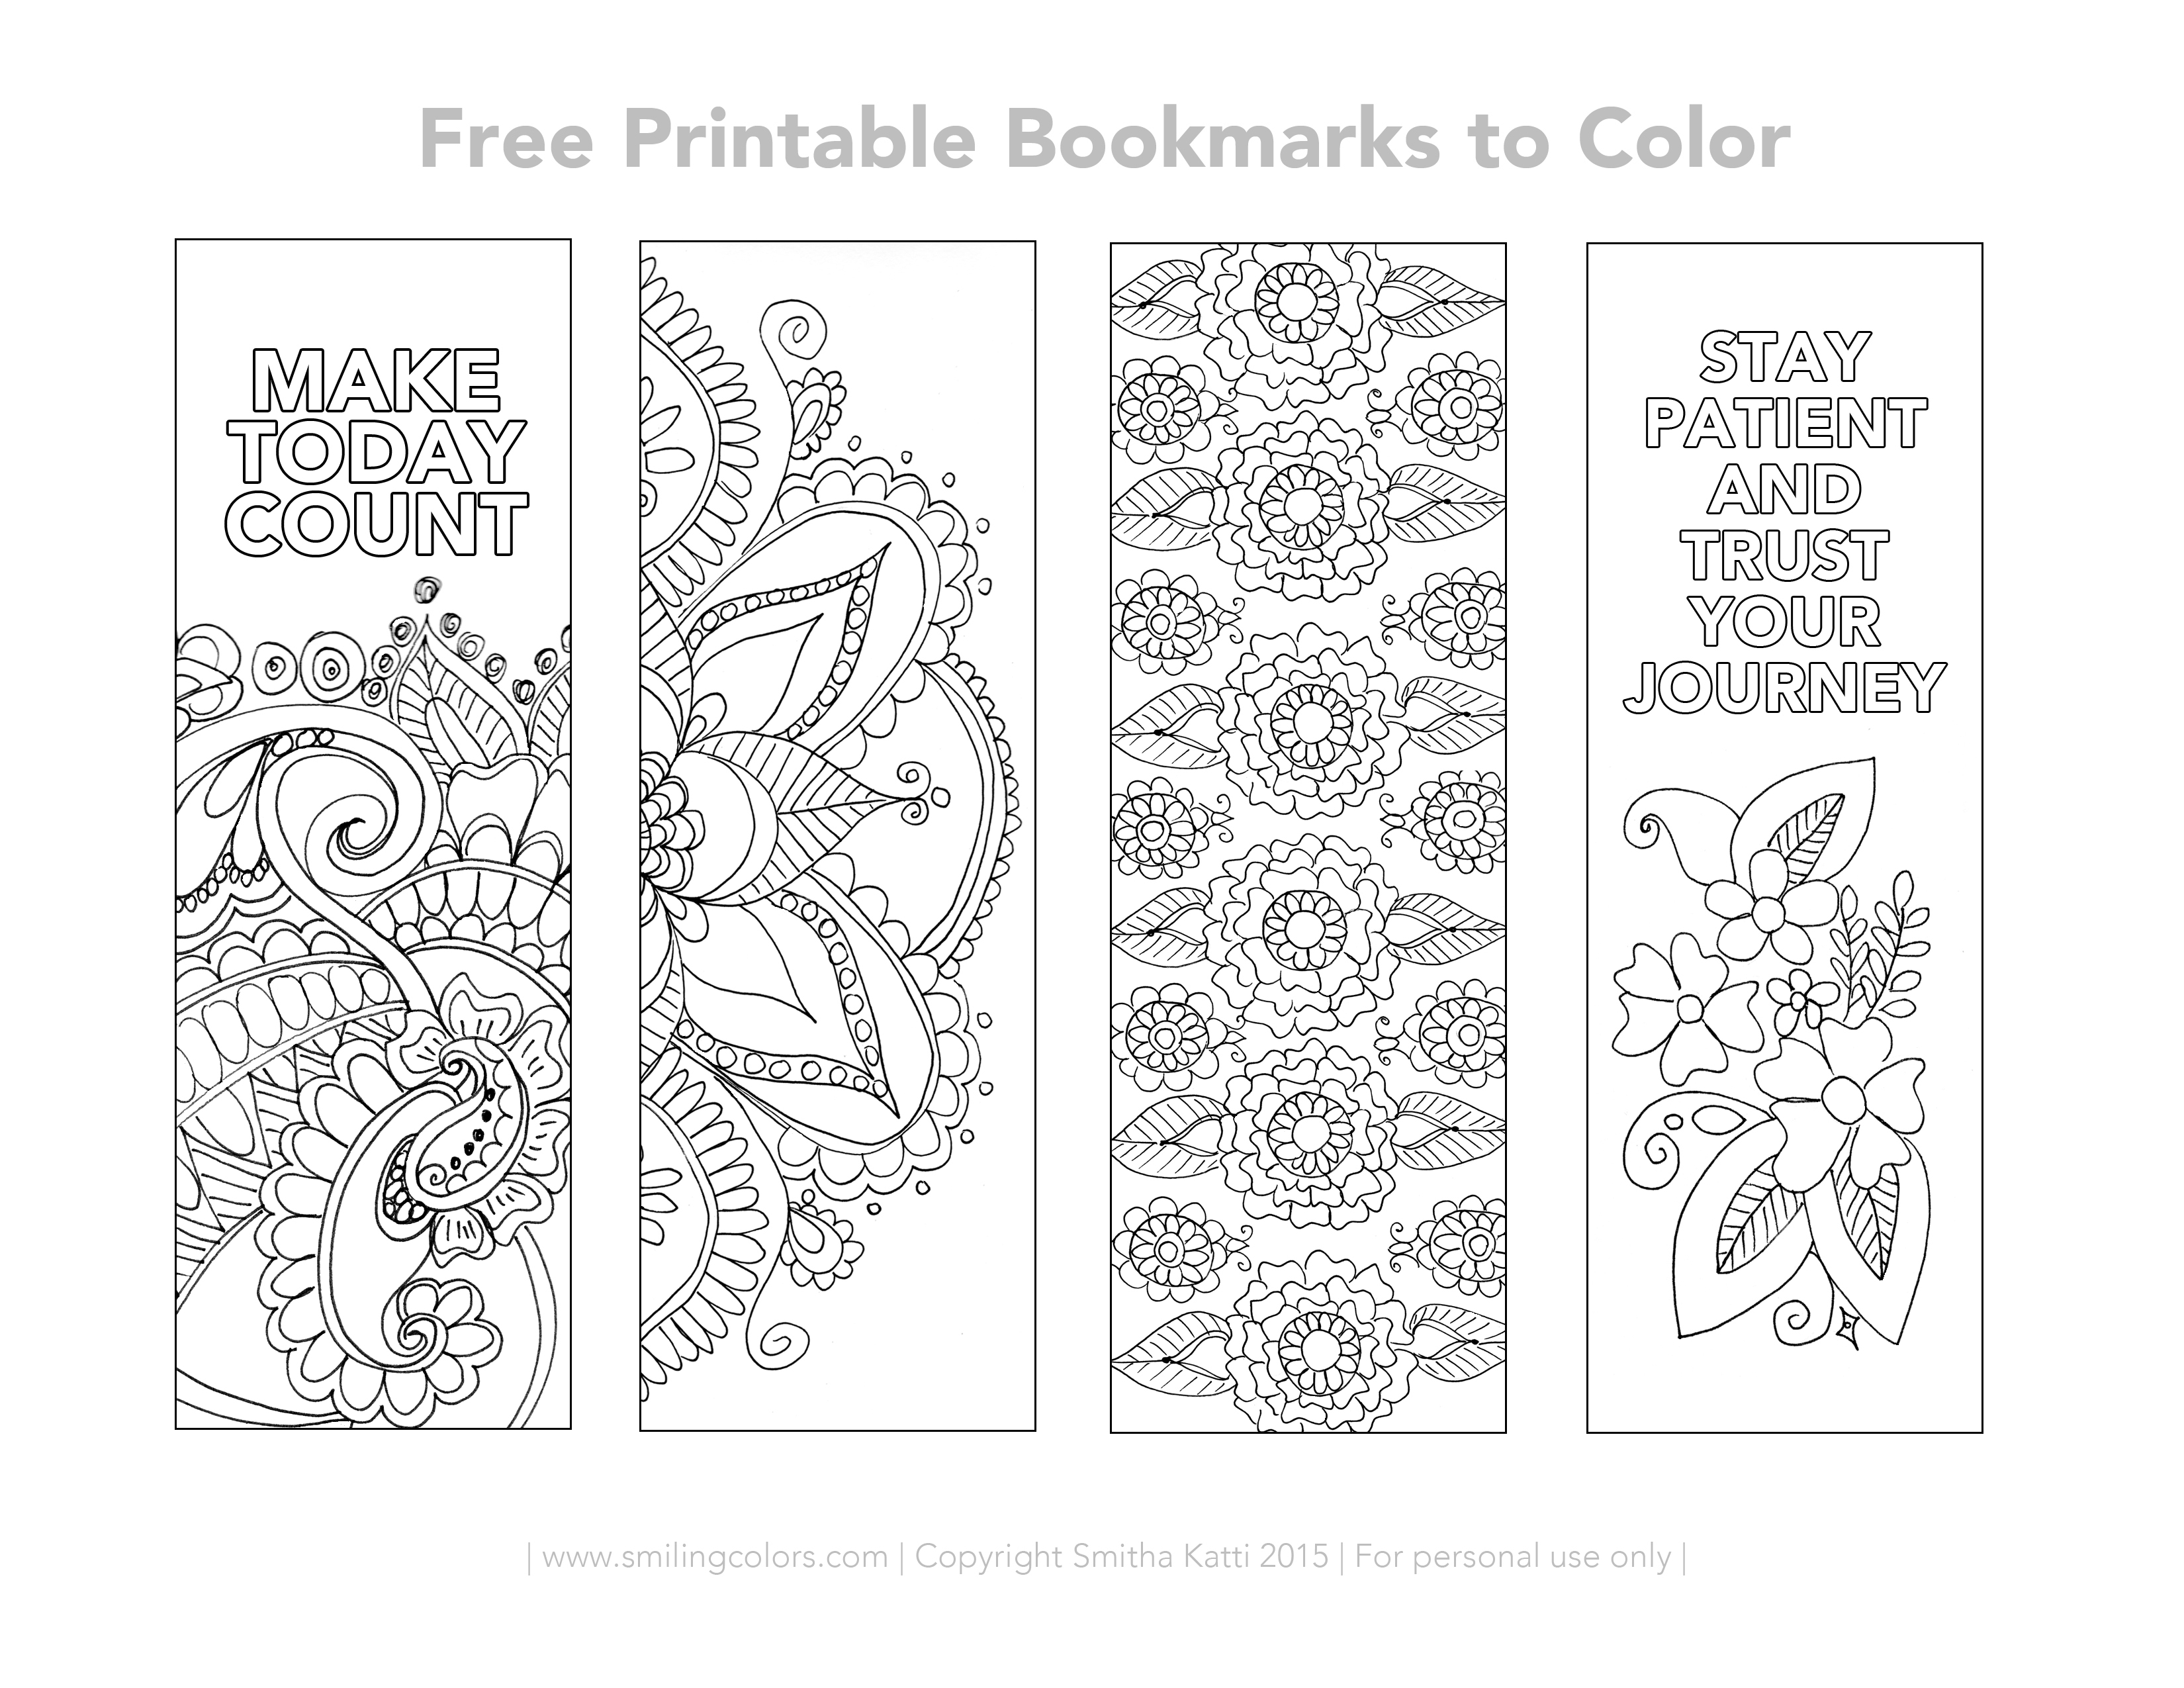 Free Printable Bookmarks To Color - Smitha Katti - Free Printable Spring Bookmarks